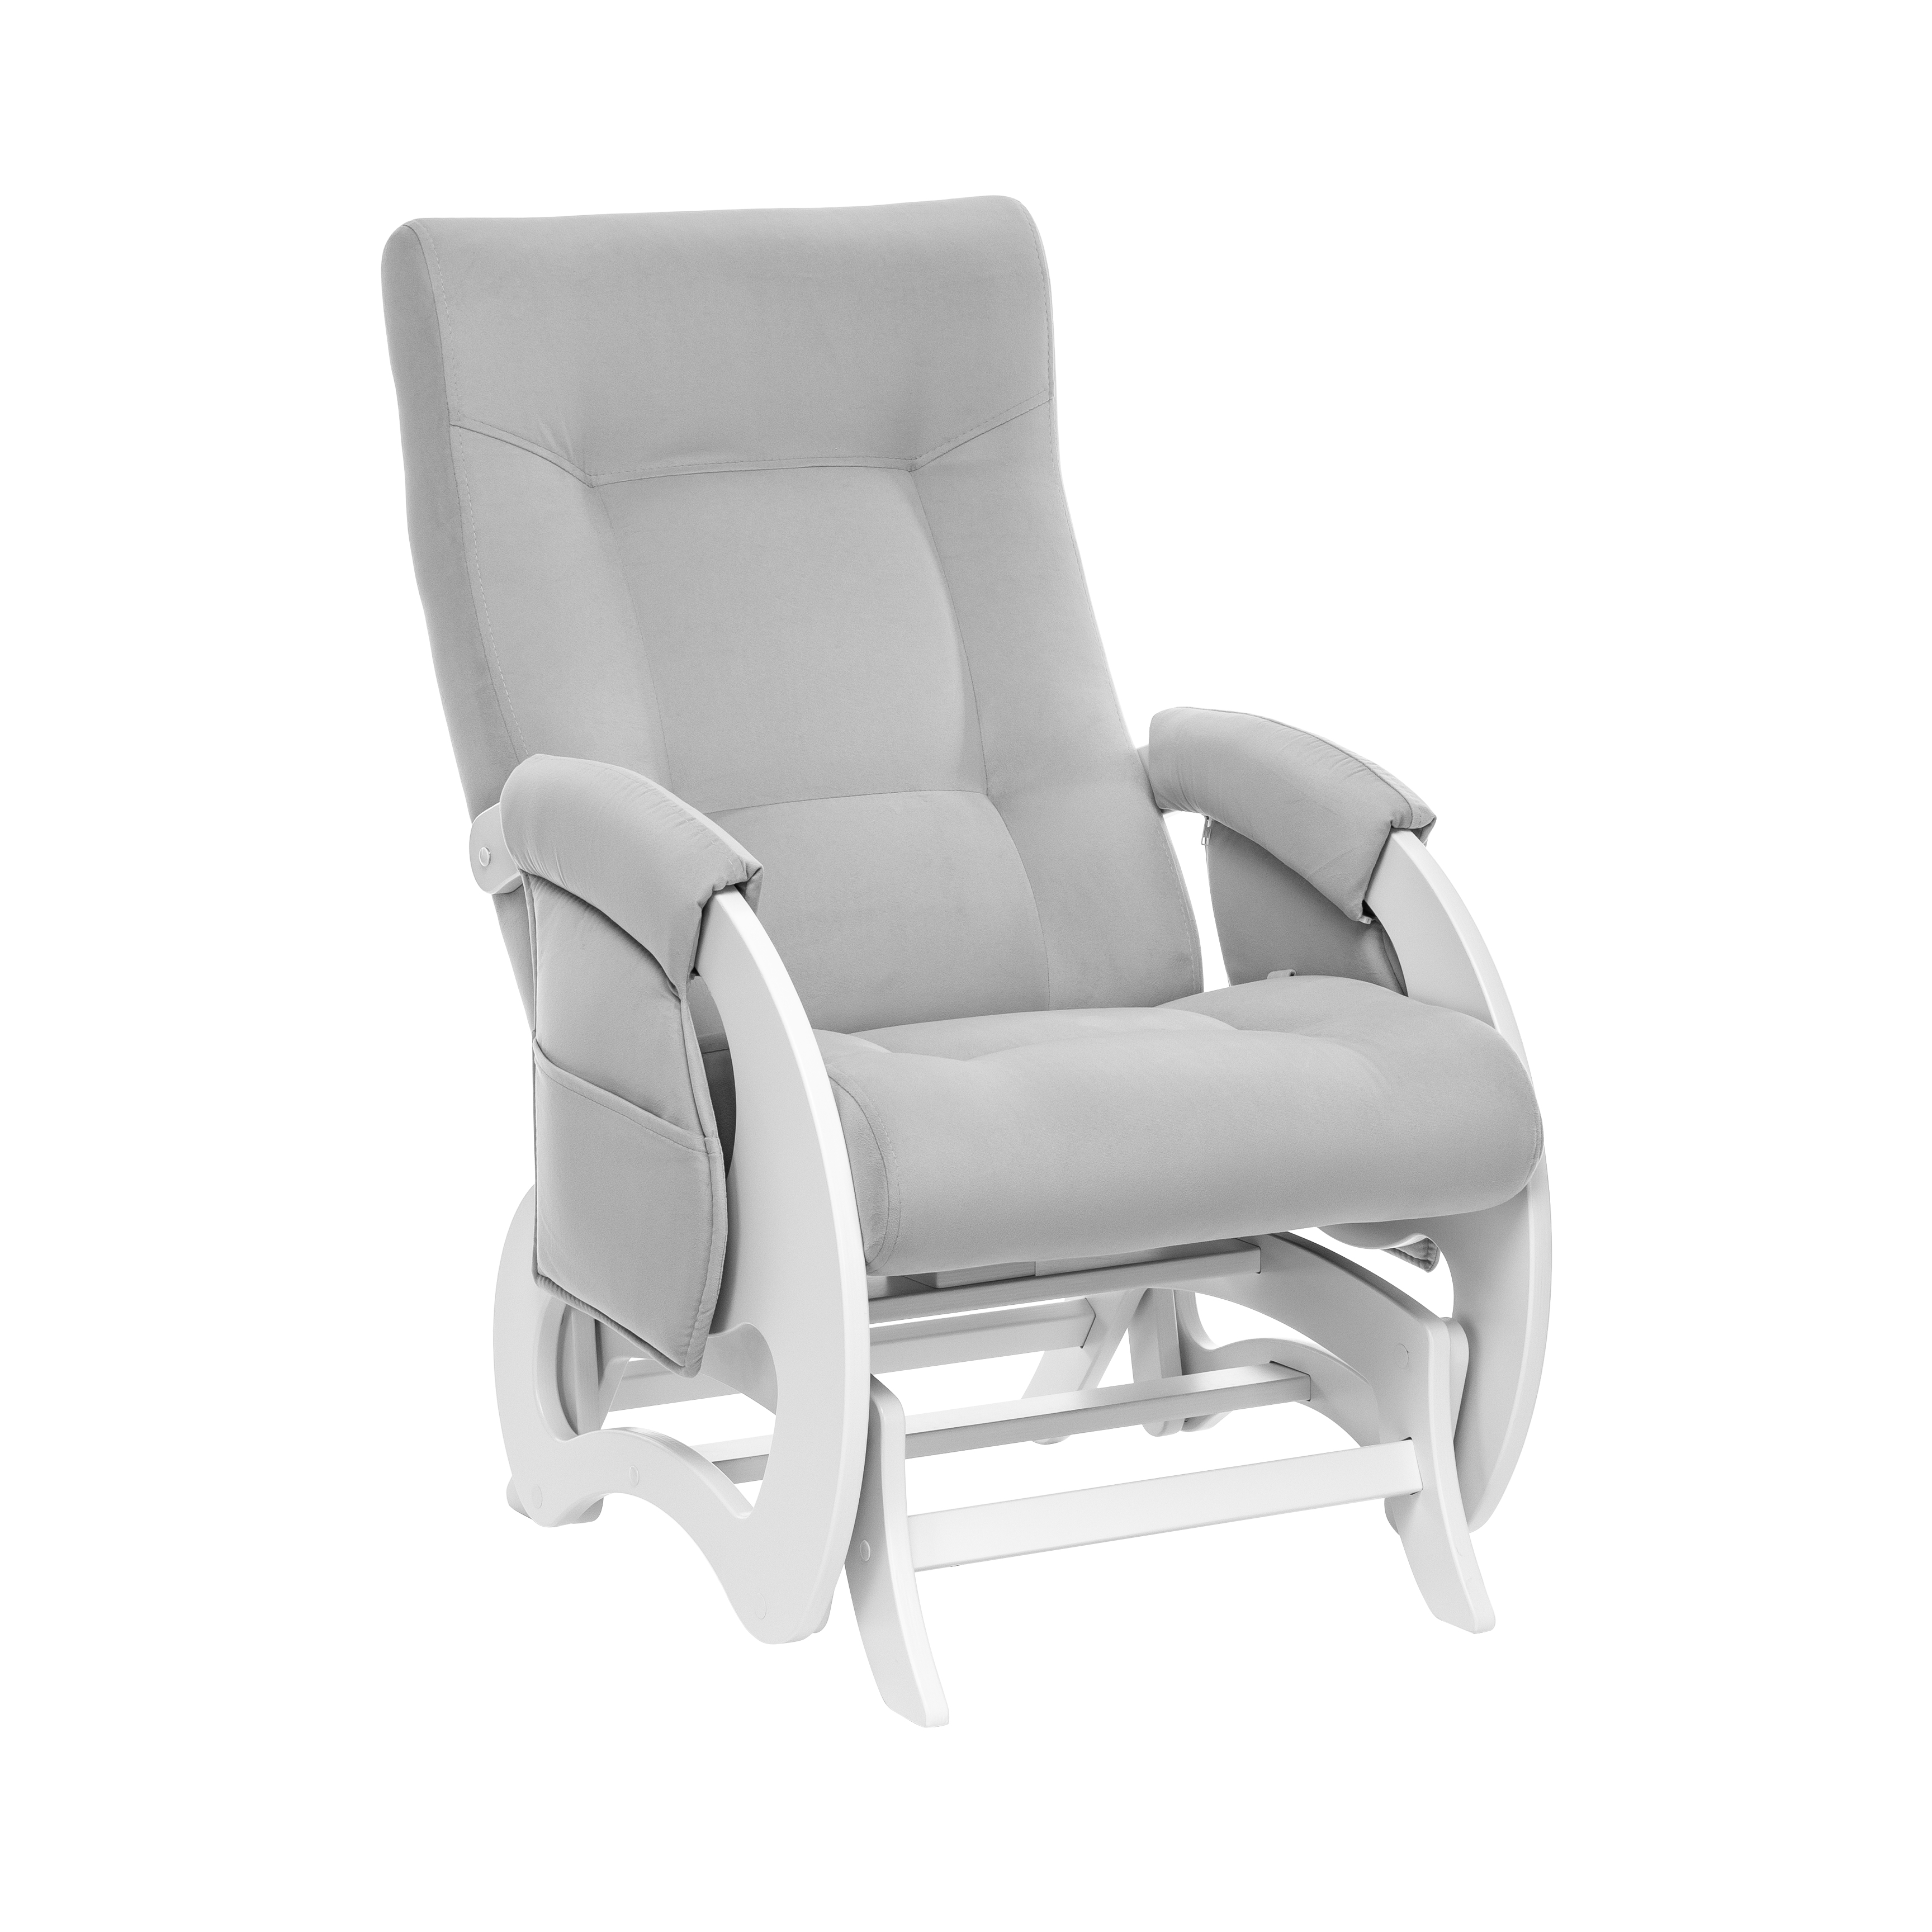 Кресло-глайдер для кормления Milli Ария Дуб молочный V51 Light Grey стульчик для кормления nuovita lembo lattiero bianco молочный белый